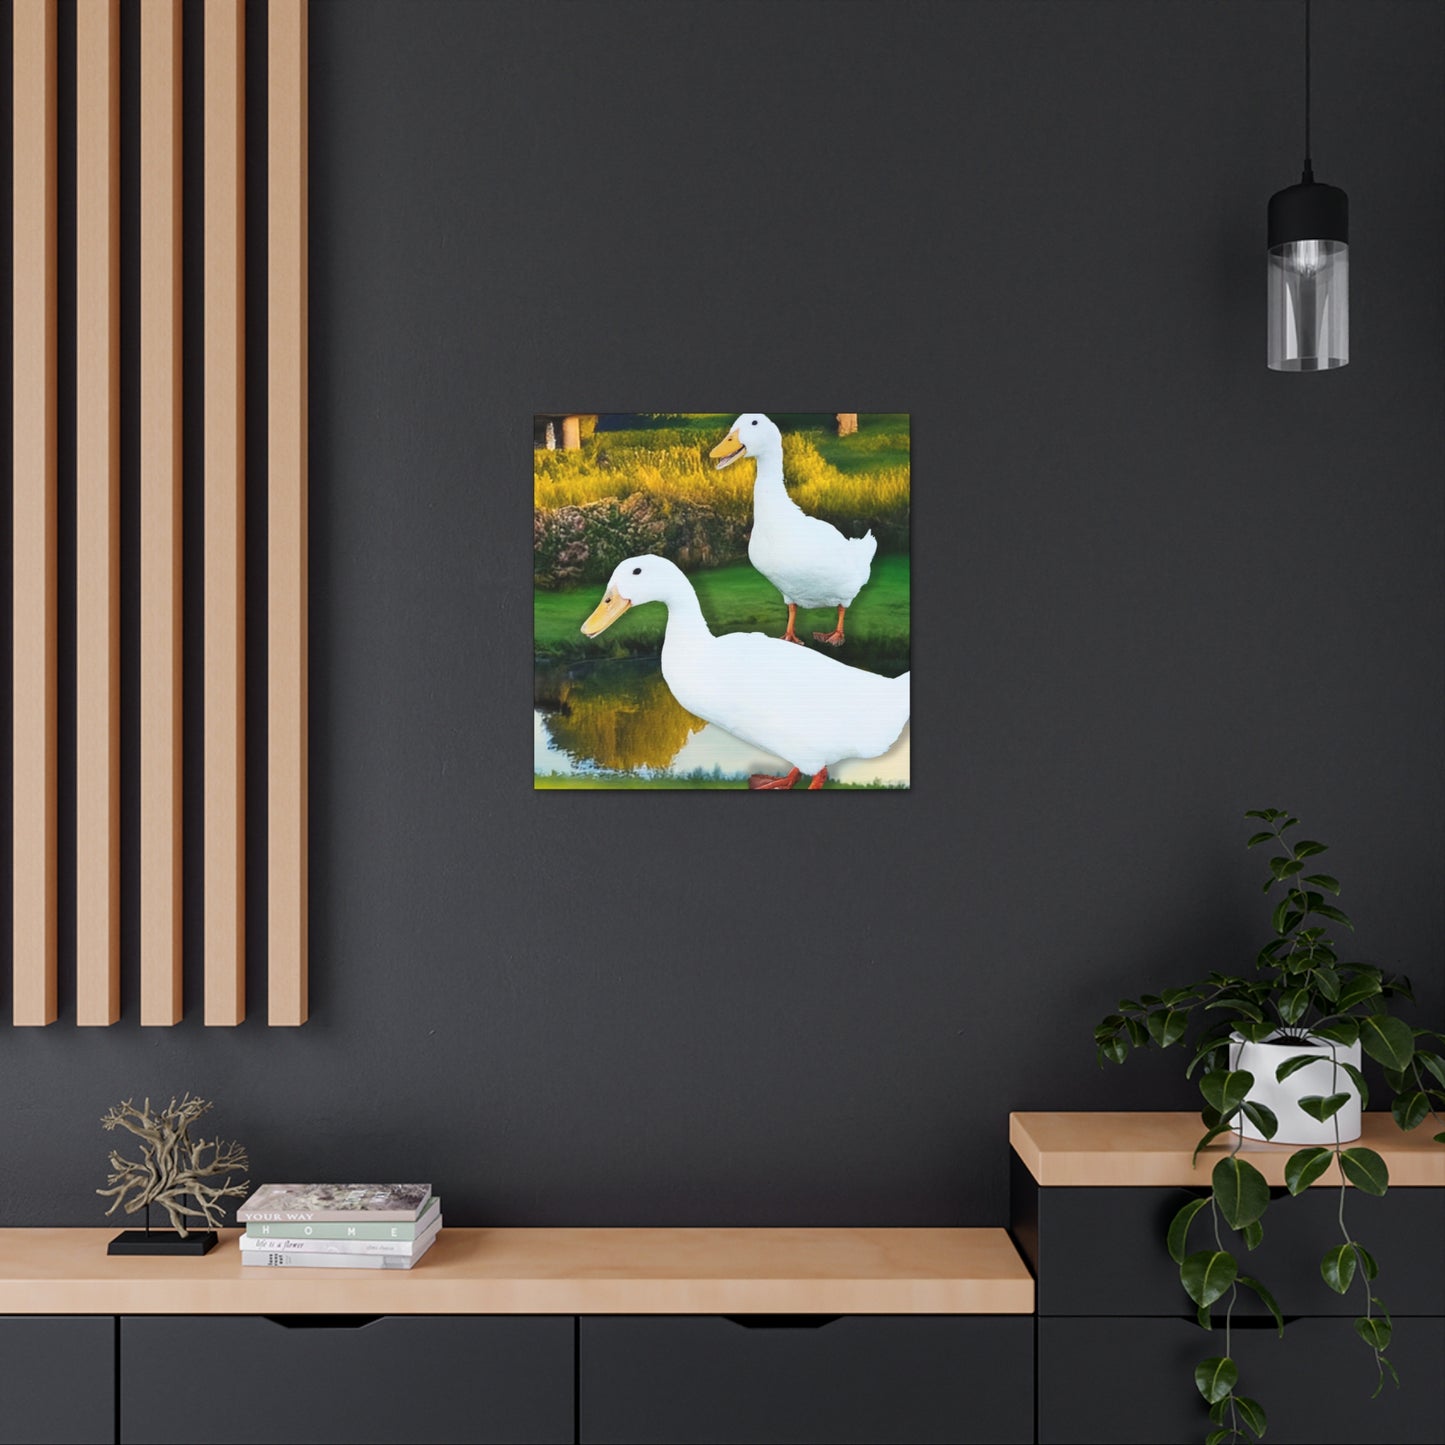 Pond Ducks - Gallery Canvas